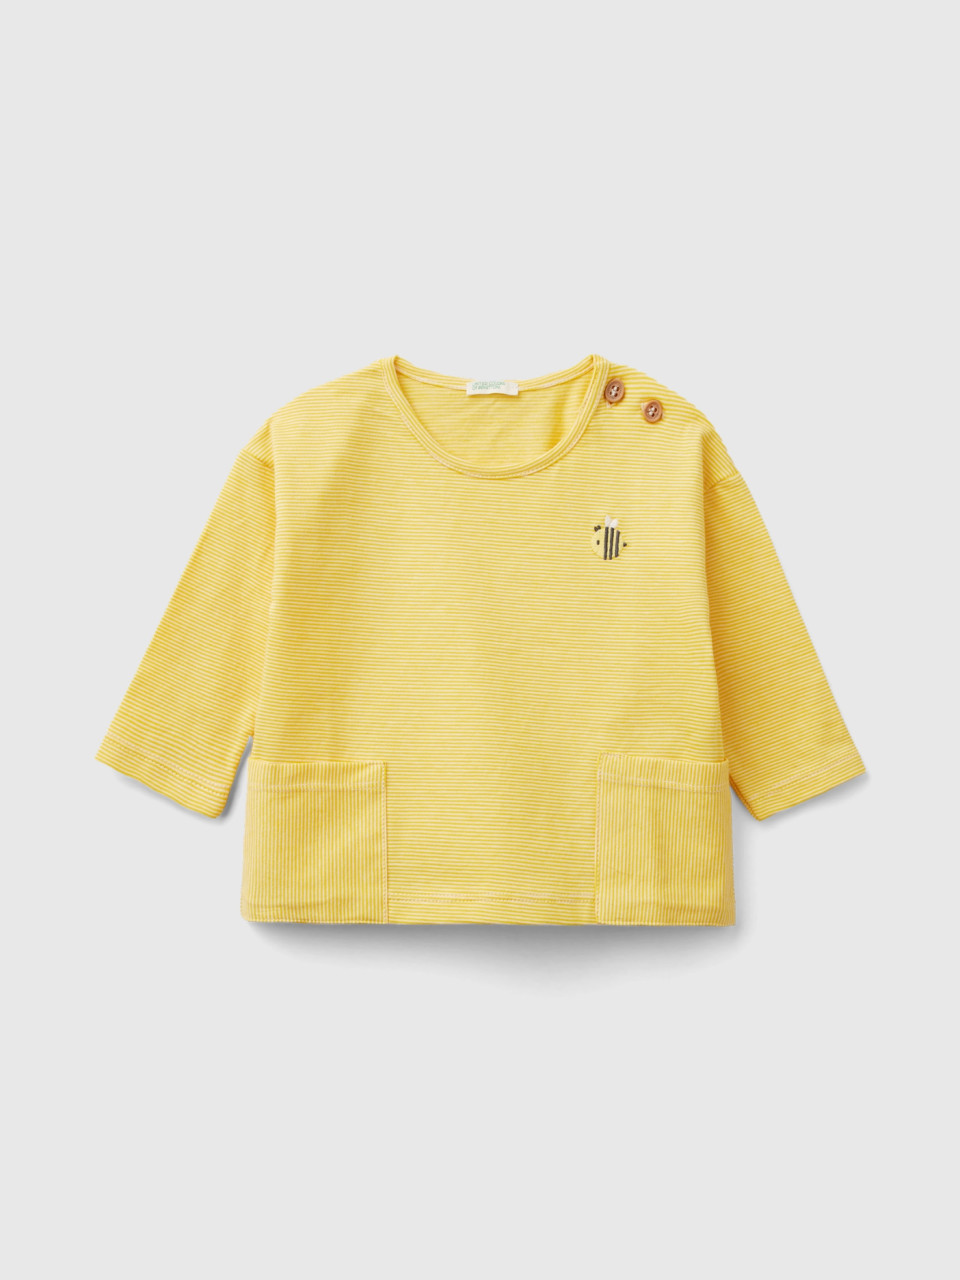 Benetton, Shirt Mit Stickerei, größe 82, Gelb